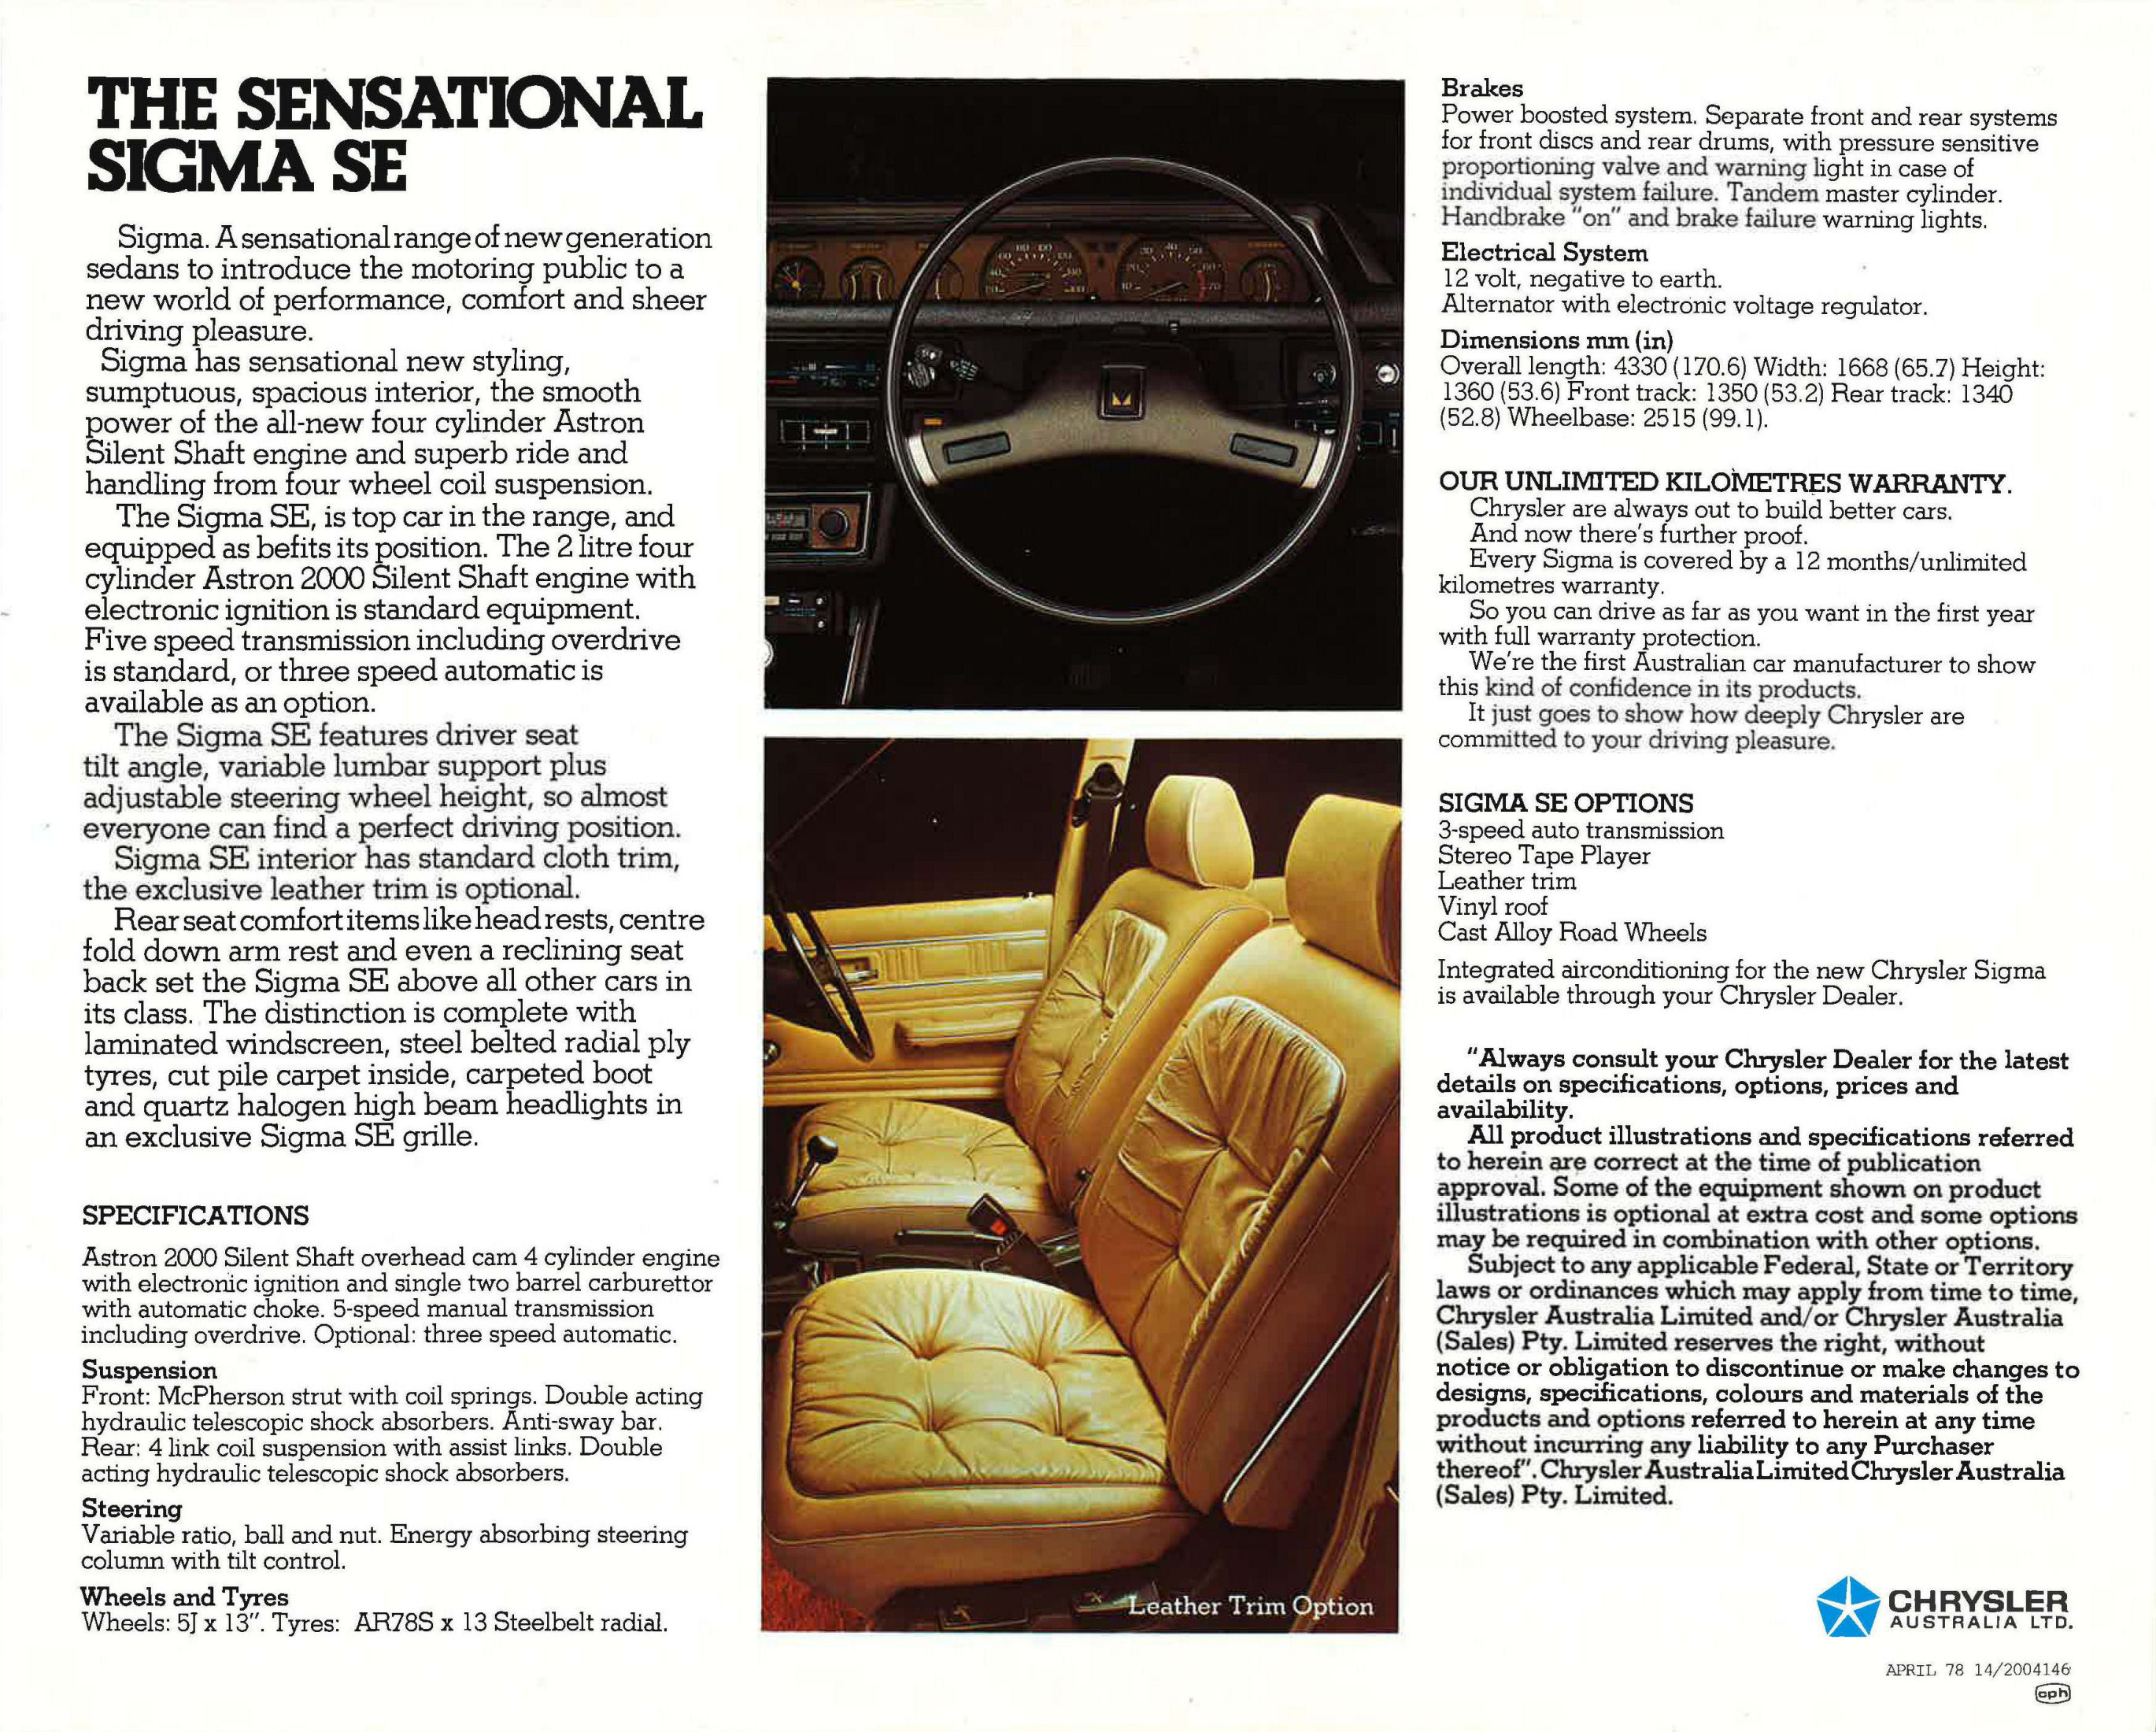 1978 Chrysler GE Sigma SE Sedan (Aus)-02